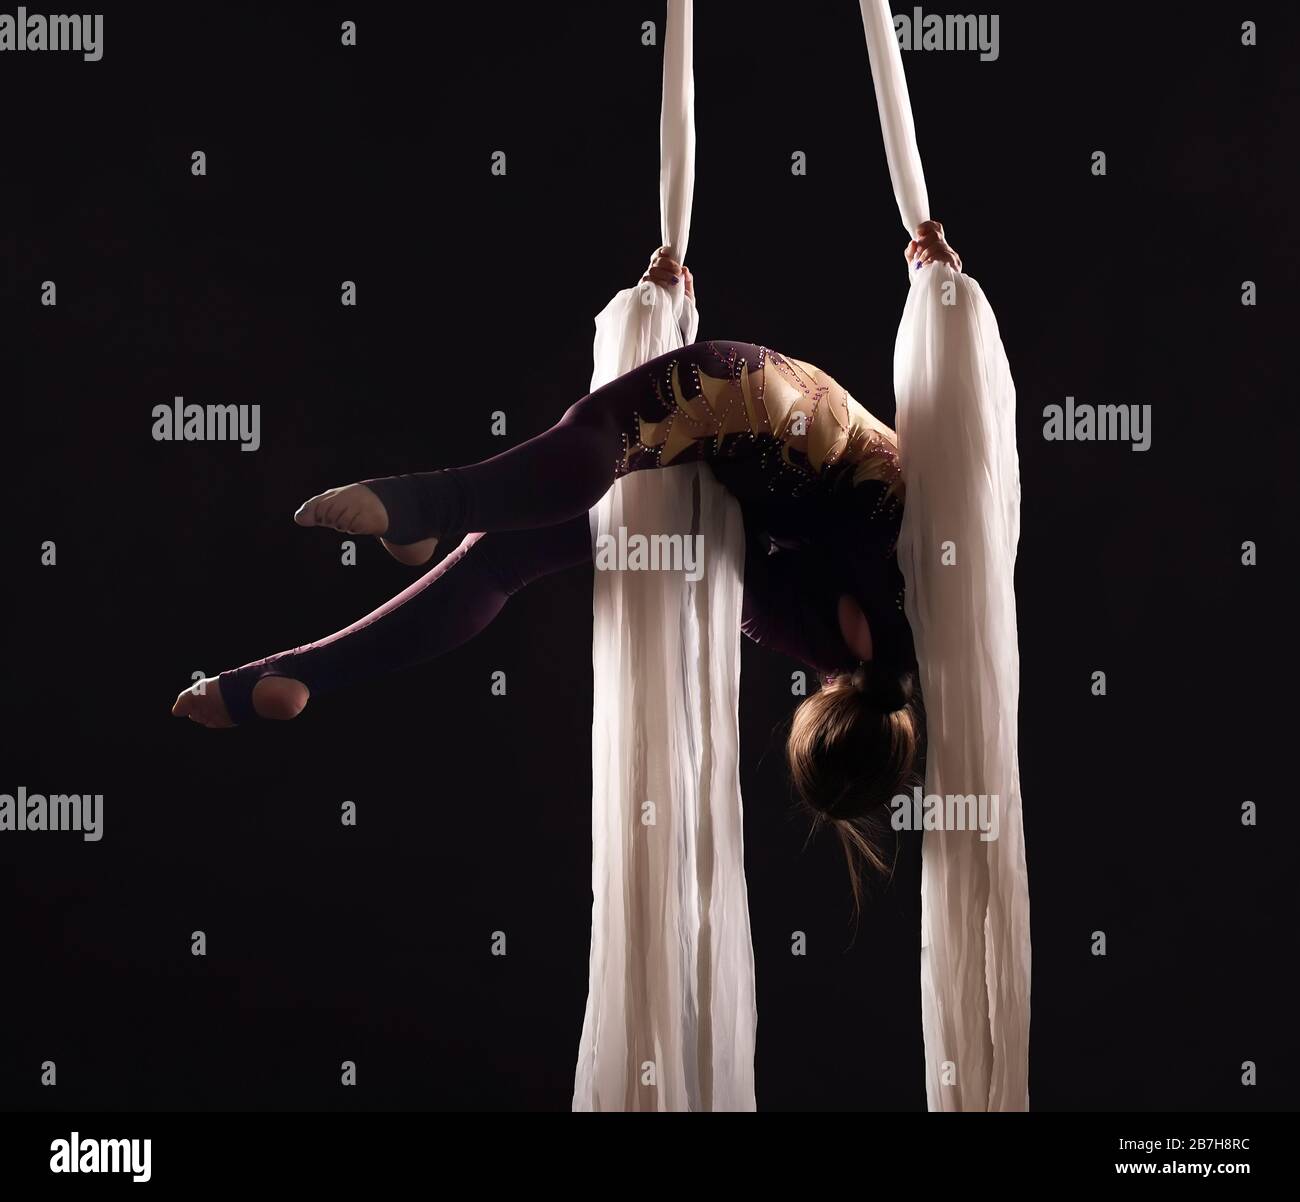 Sportliche Frau im Burgund Anzug führt Gymnastik- und Zirkusübungen auf weißer Seide im Kontralicht durch. Studioaufnahmen vor dunklem Hintergrund. Stockfoto